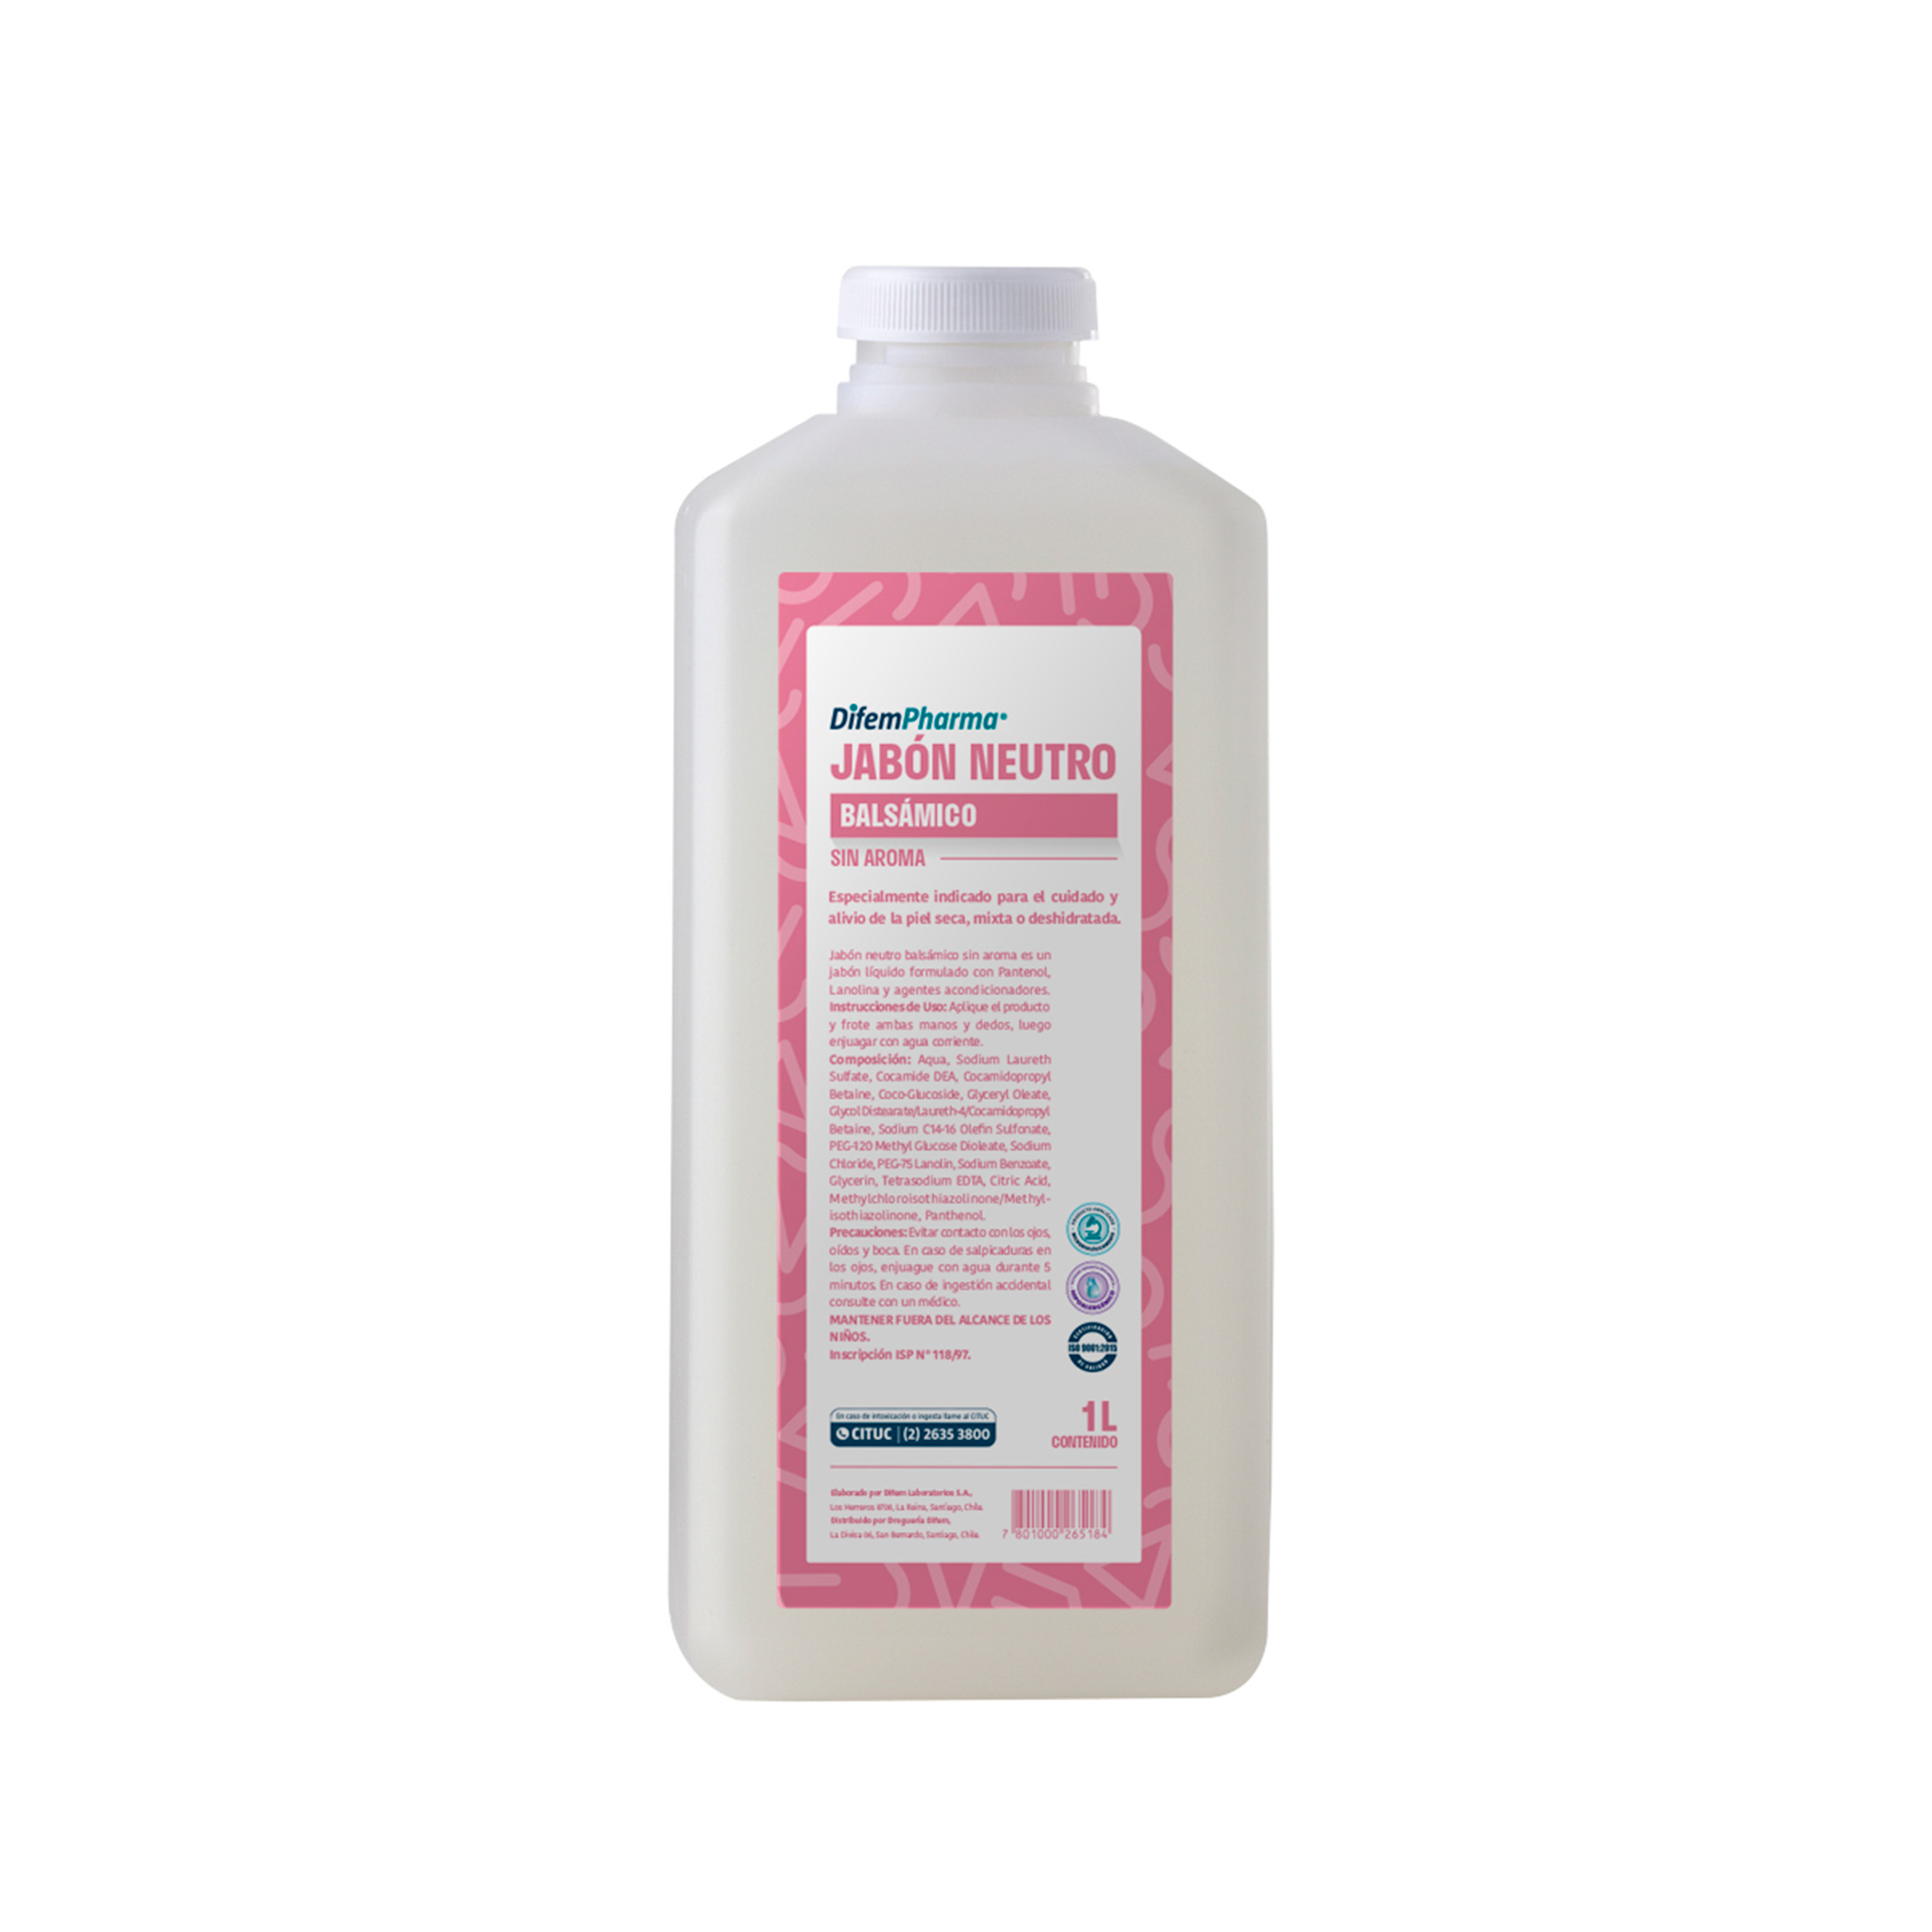 Jabón líquido formulado con Pantenol, Lanolina y agentes acondicionadores, especialmente indicado para el cuidado diario y alivio de la piel.